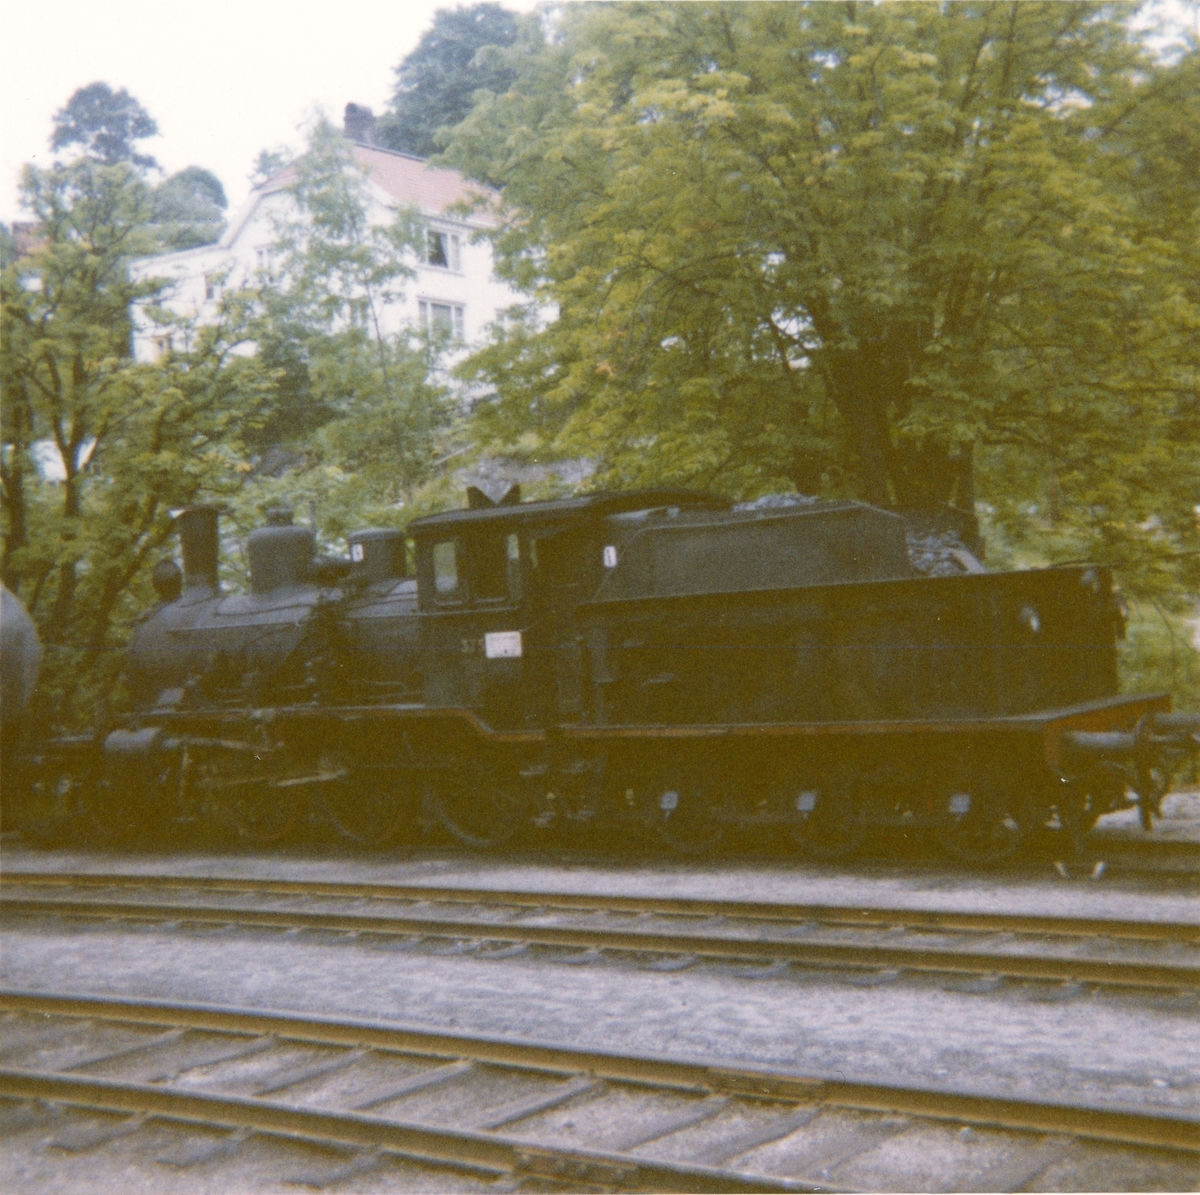 Damplokomotiv type 21c 375 hensatt på Arendal stasjon. Damplokomotiver ble erstattet av diesellokomotiver i togene mellom Arendal og Treungen.